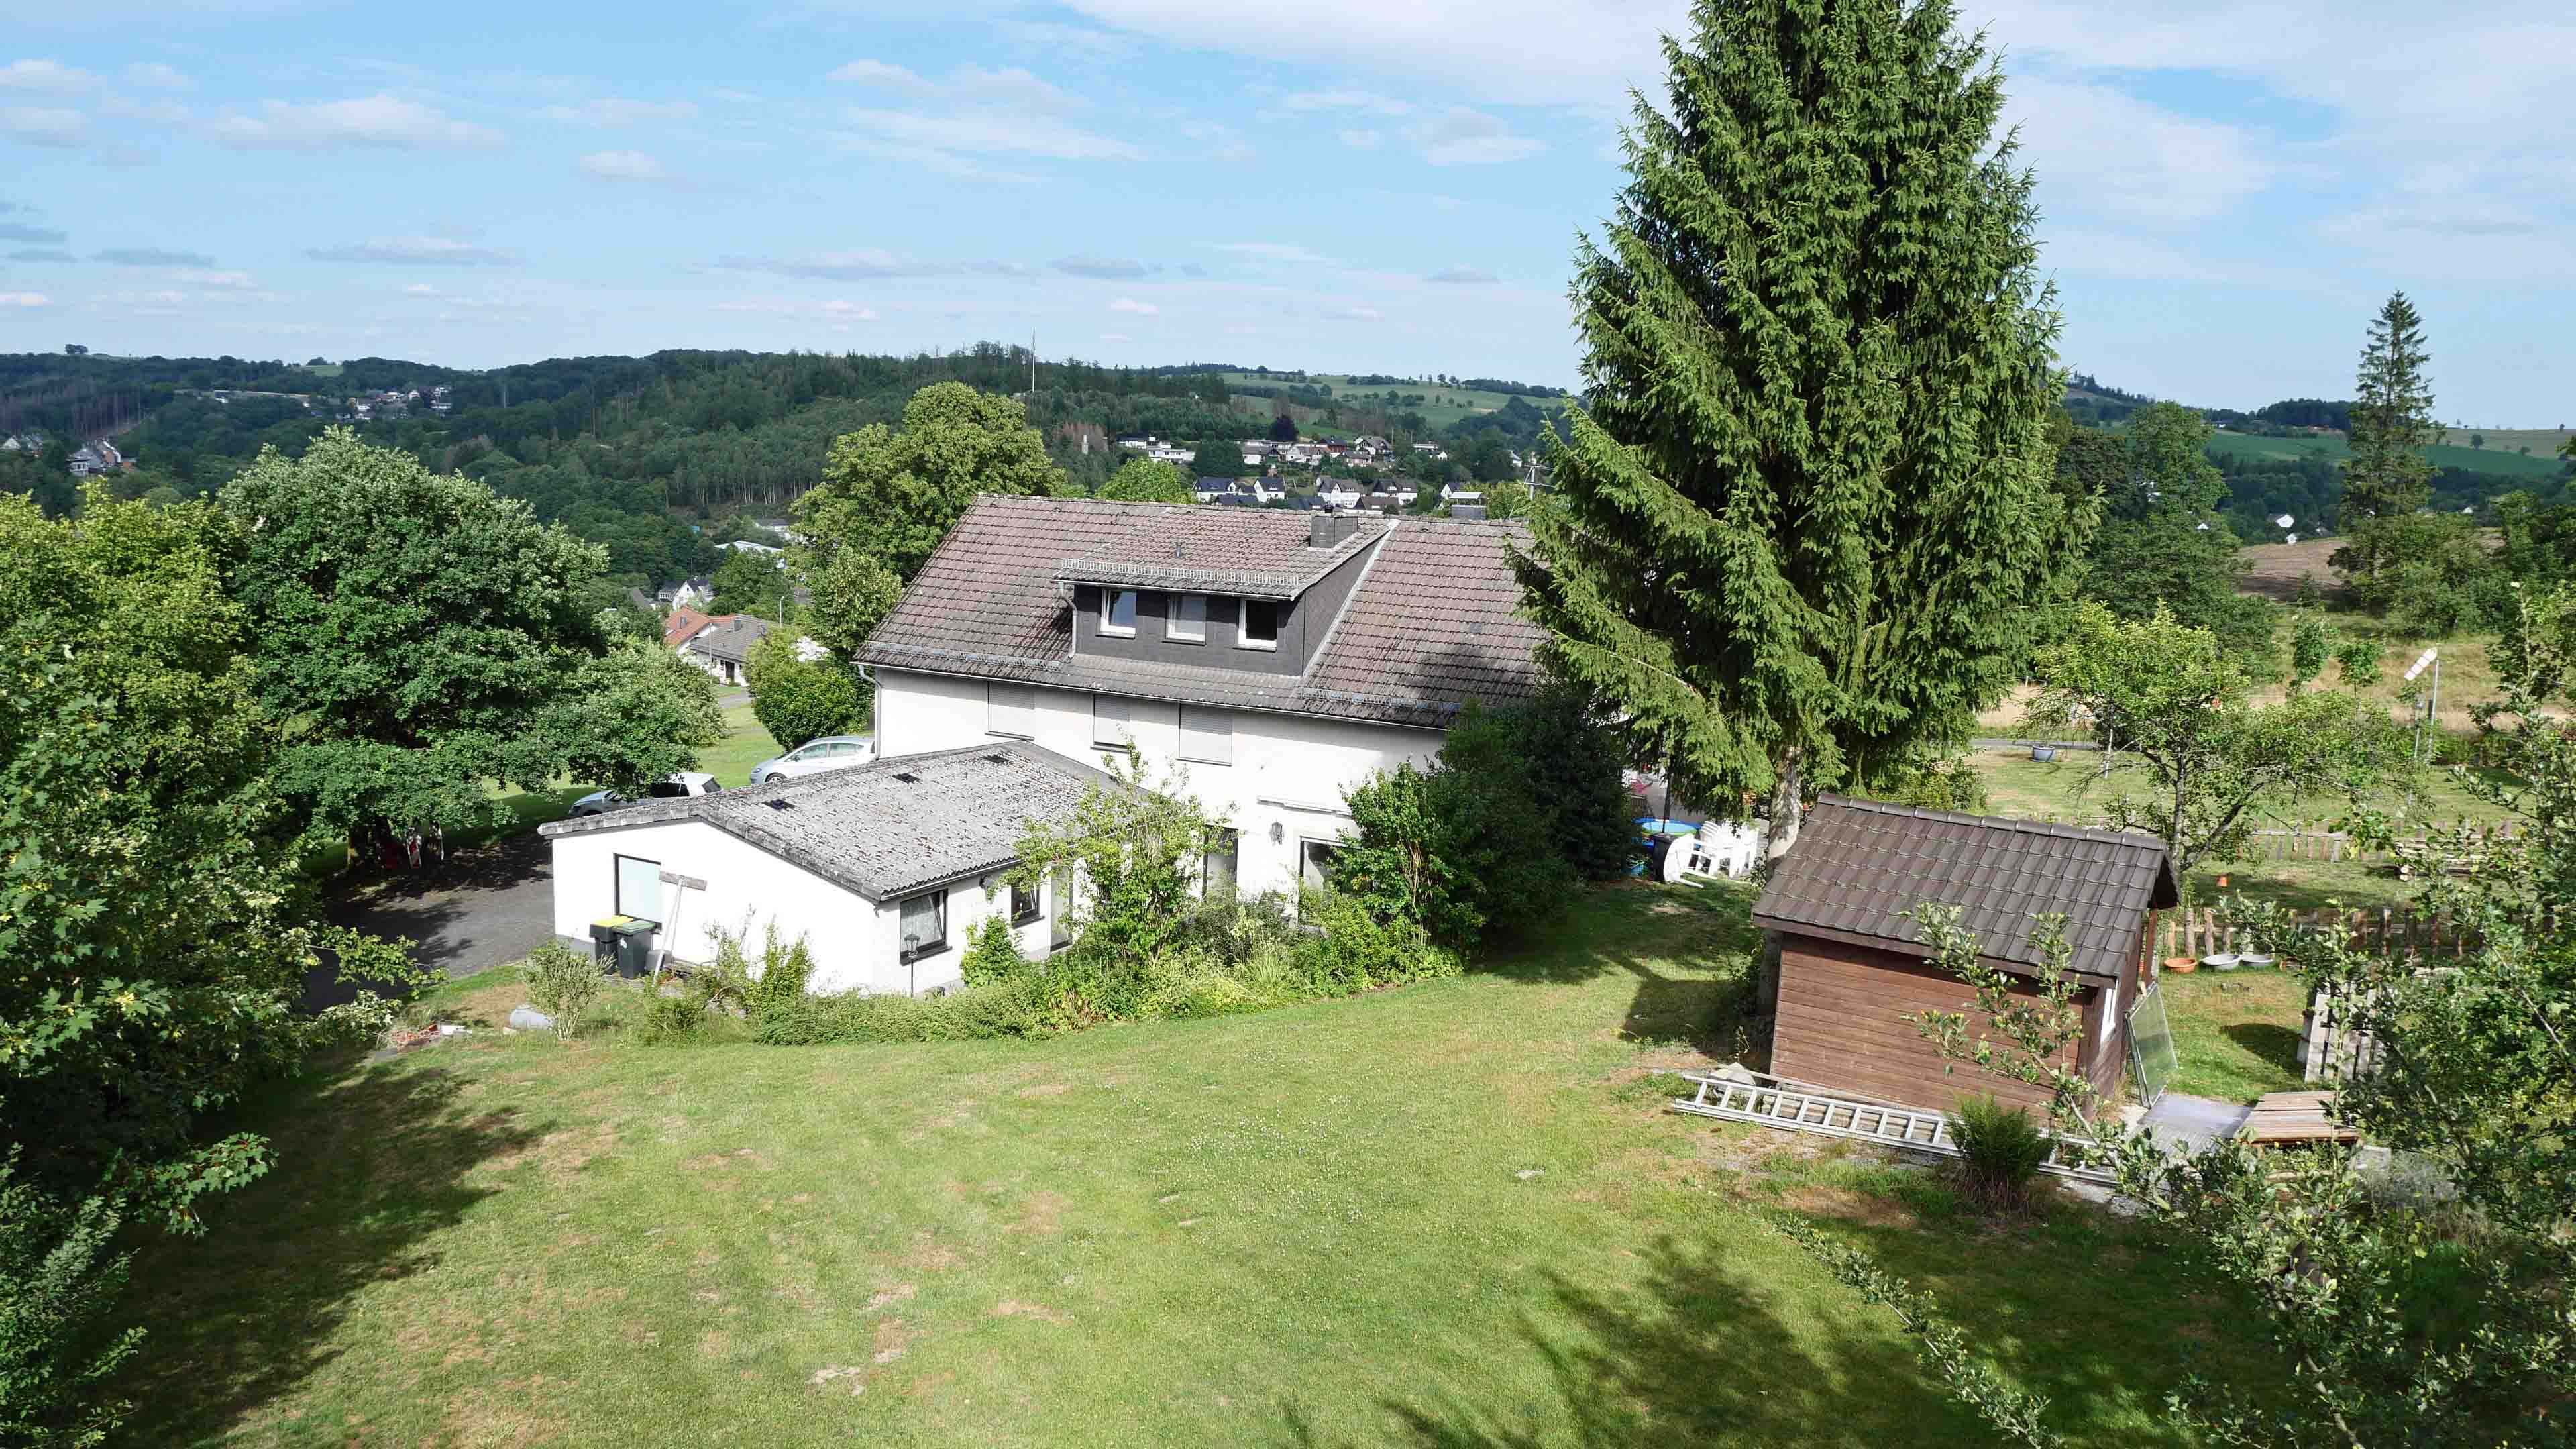 Reichshof-Wildbergerhütte: Wohnhaus mit 3 Wohneinheiten und 4 Garagen, das am besten gelegene Haus in Wildbergerhütte